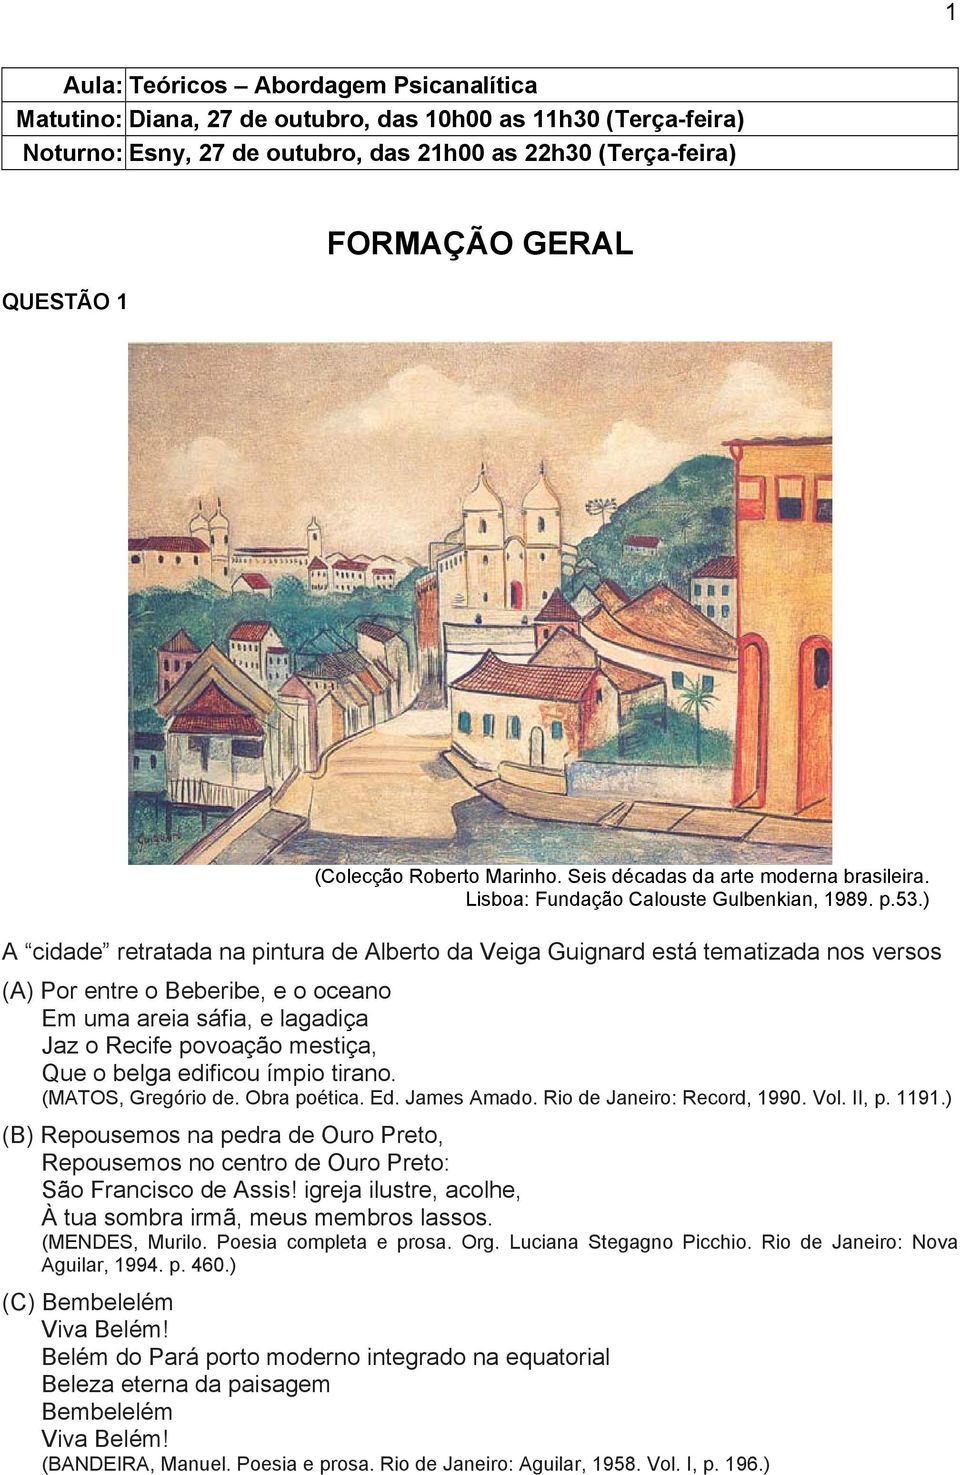 ) A cidade retratada na pintura de Alberto da Veiga Guignard está tematizada nos versos (A) Por entre o Beberibe, e o oceano Em uma areia sáfia, e lagadiça Jaz o Recife povoação mestiça, Que o belga